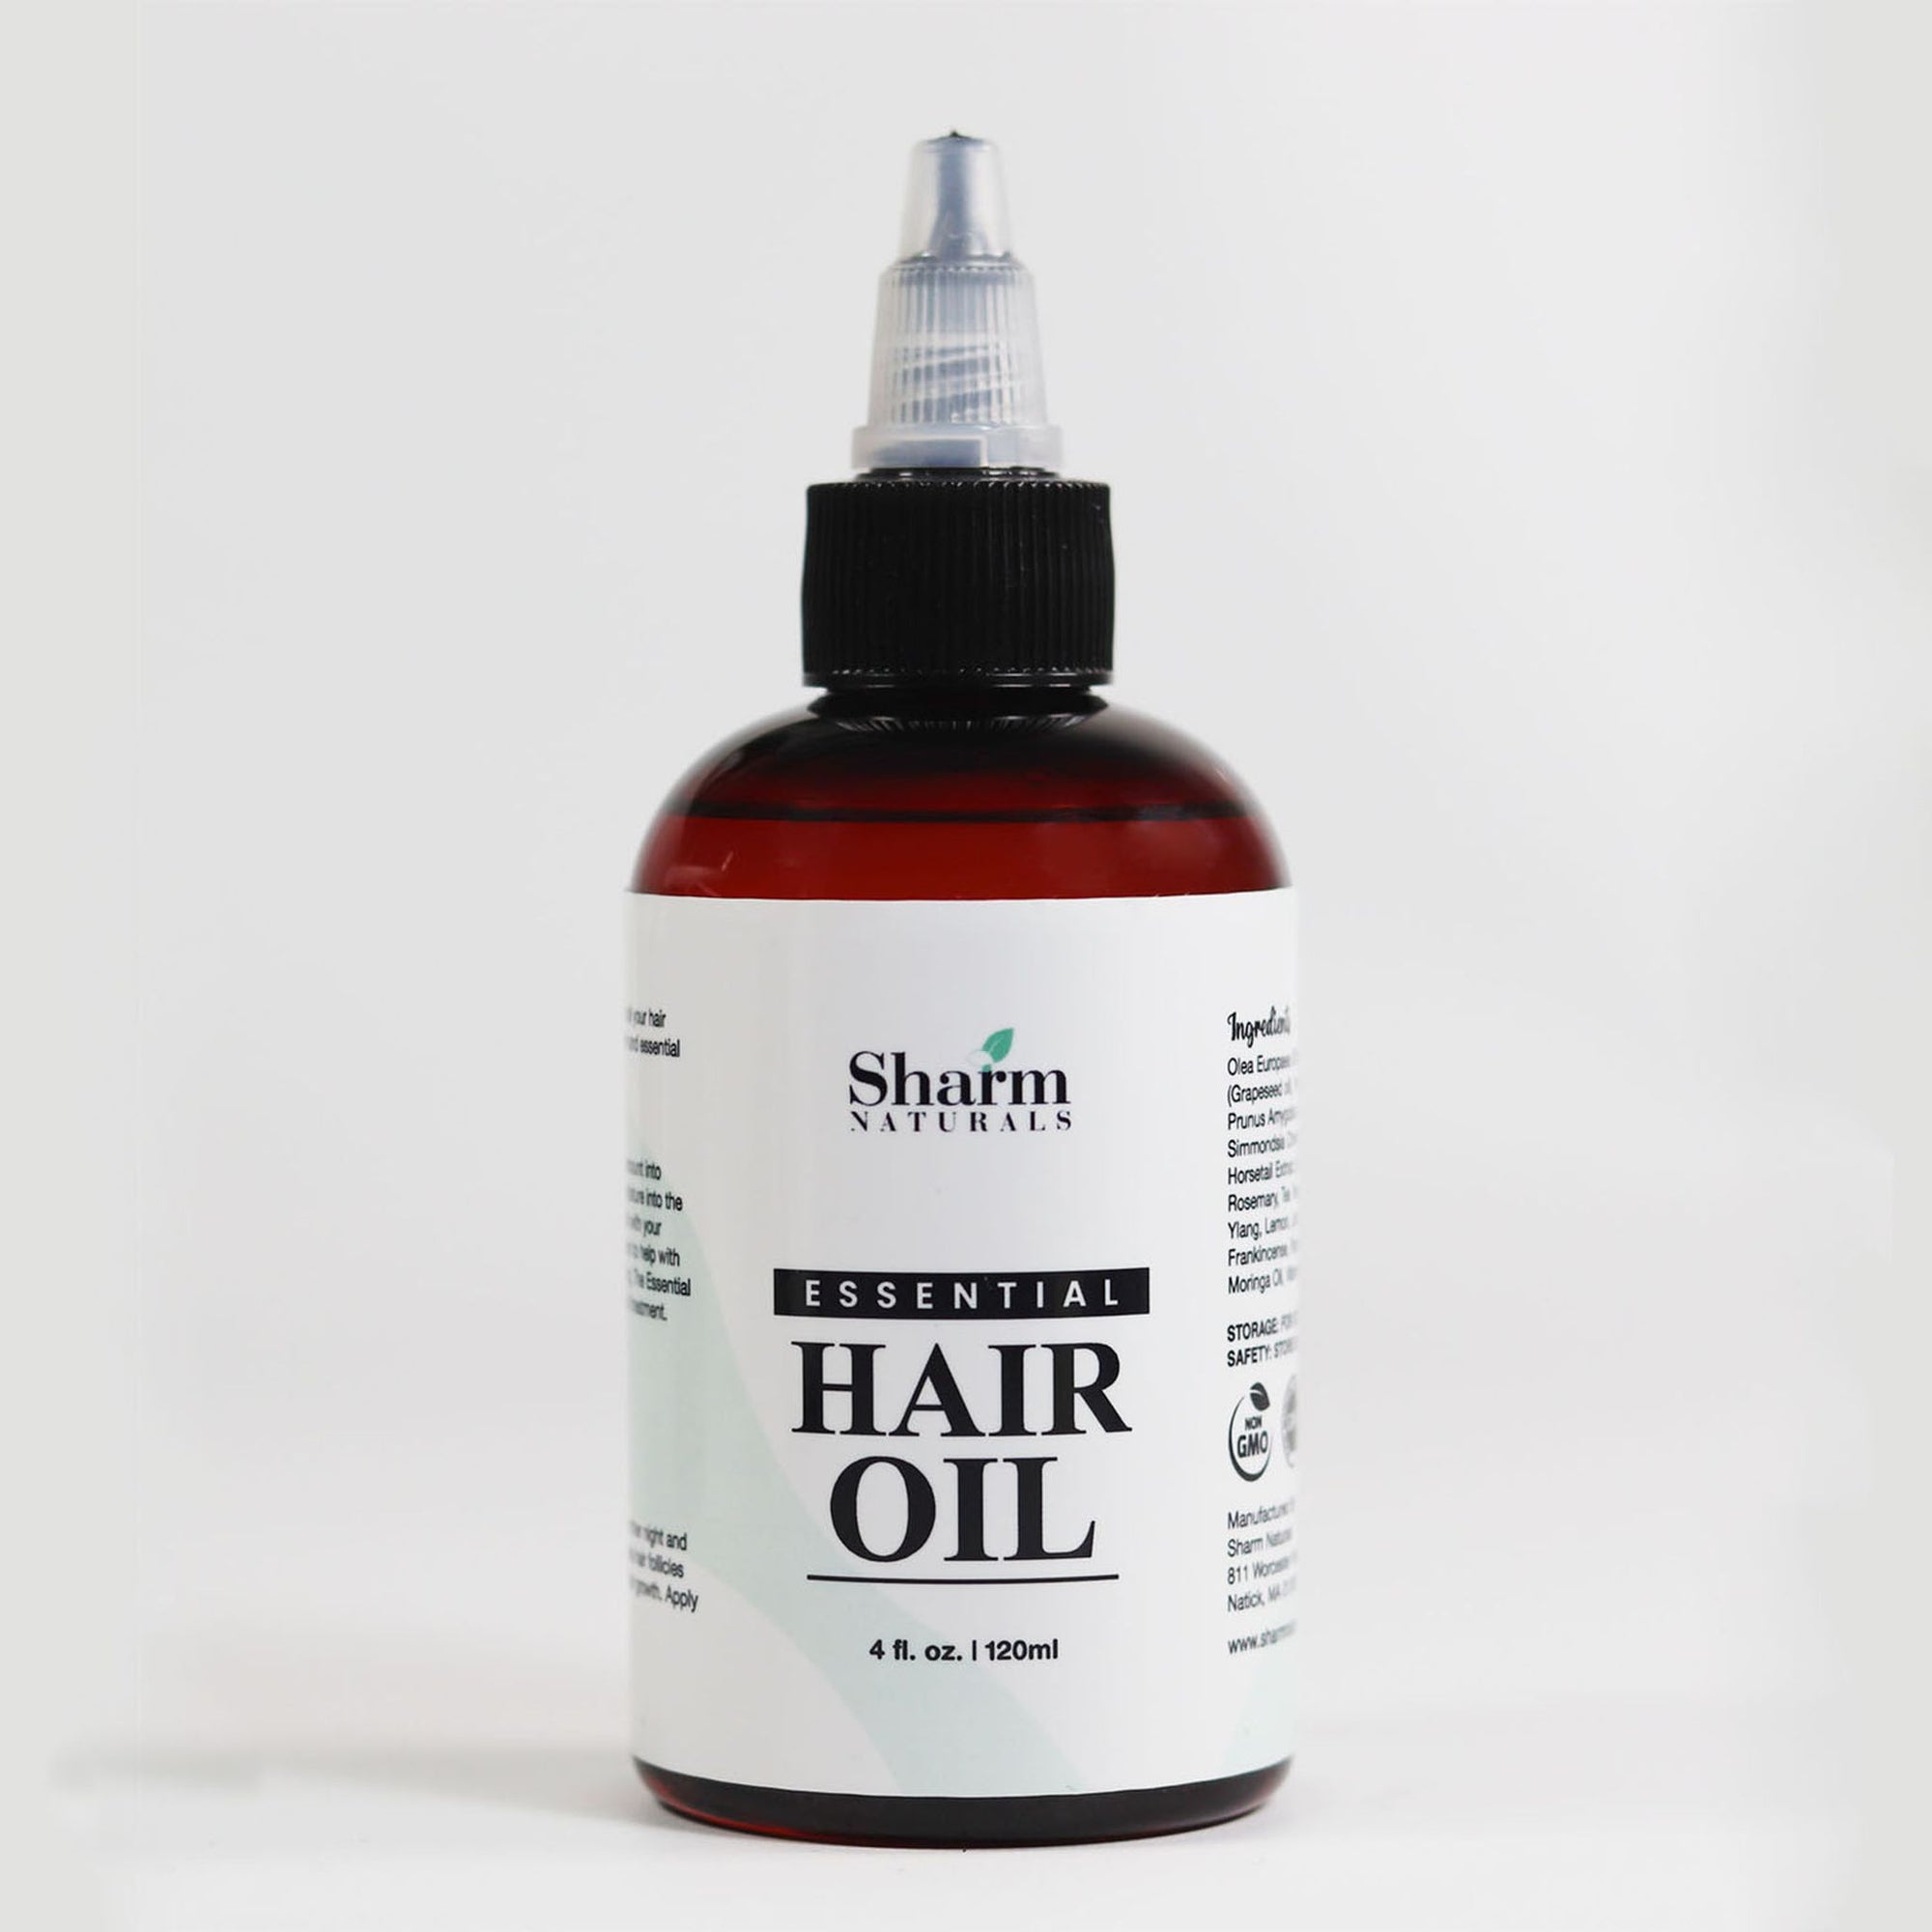 Essential Hair Oil